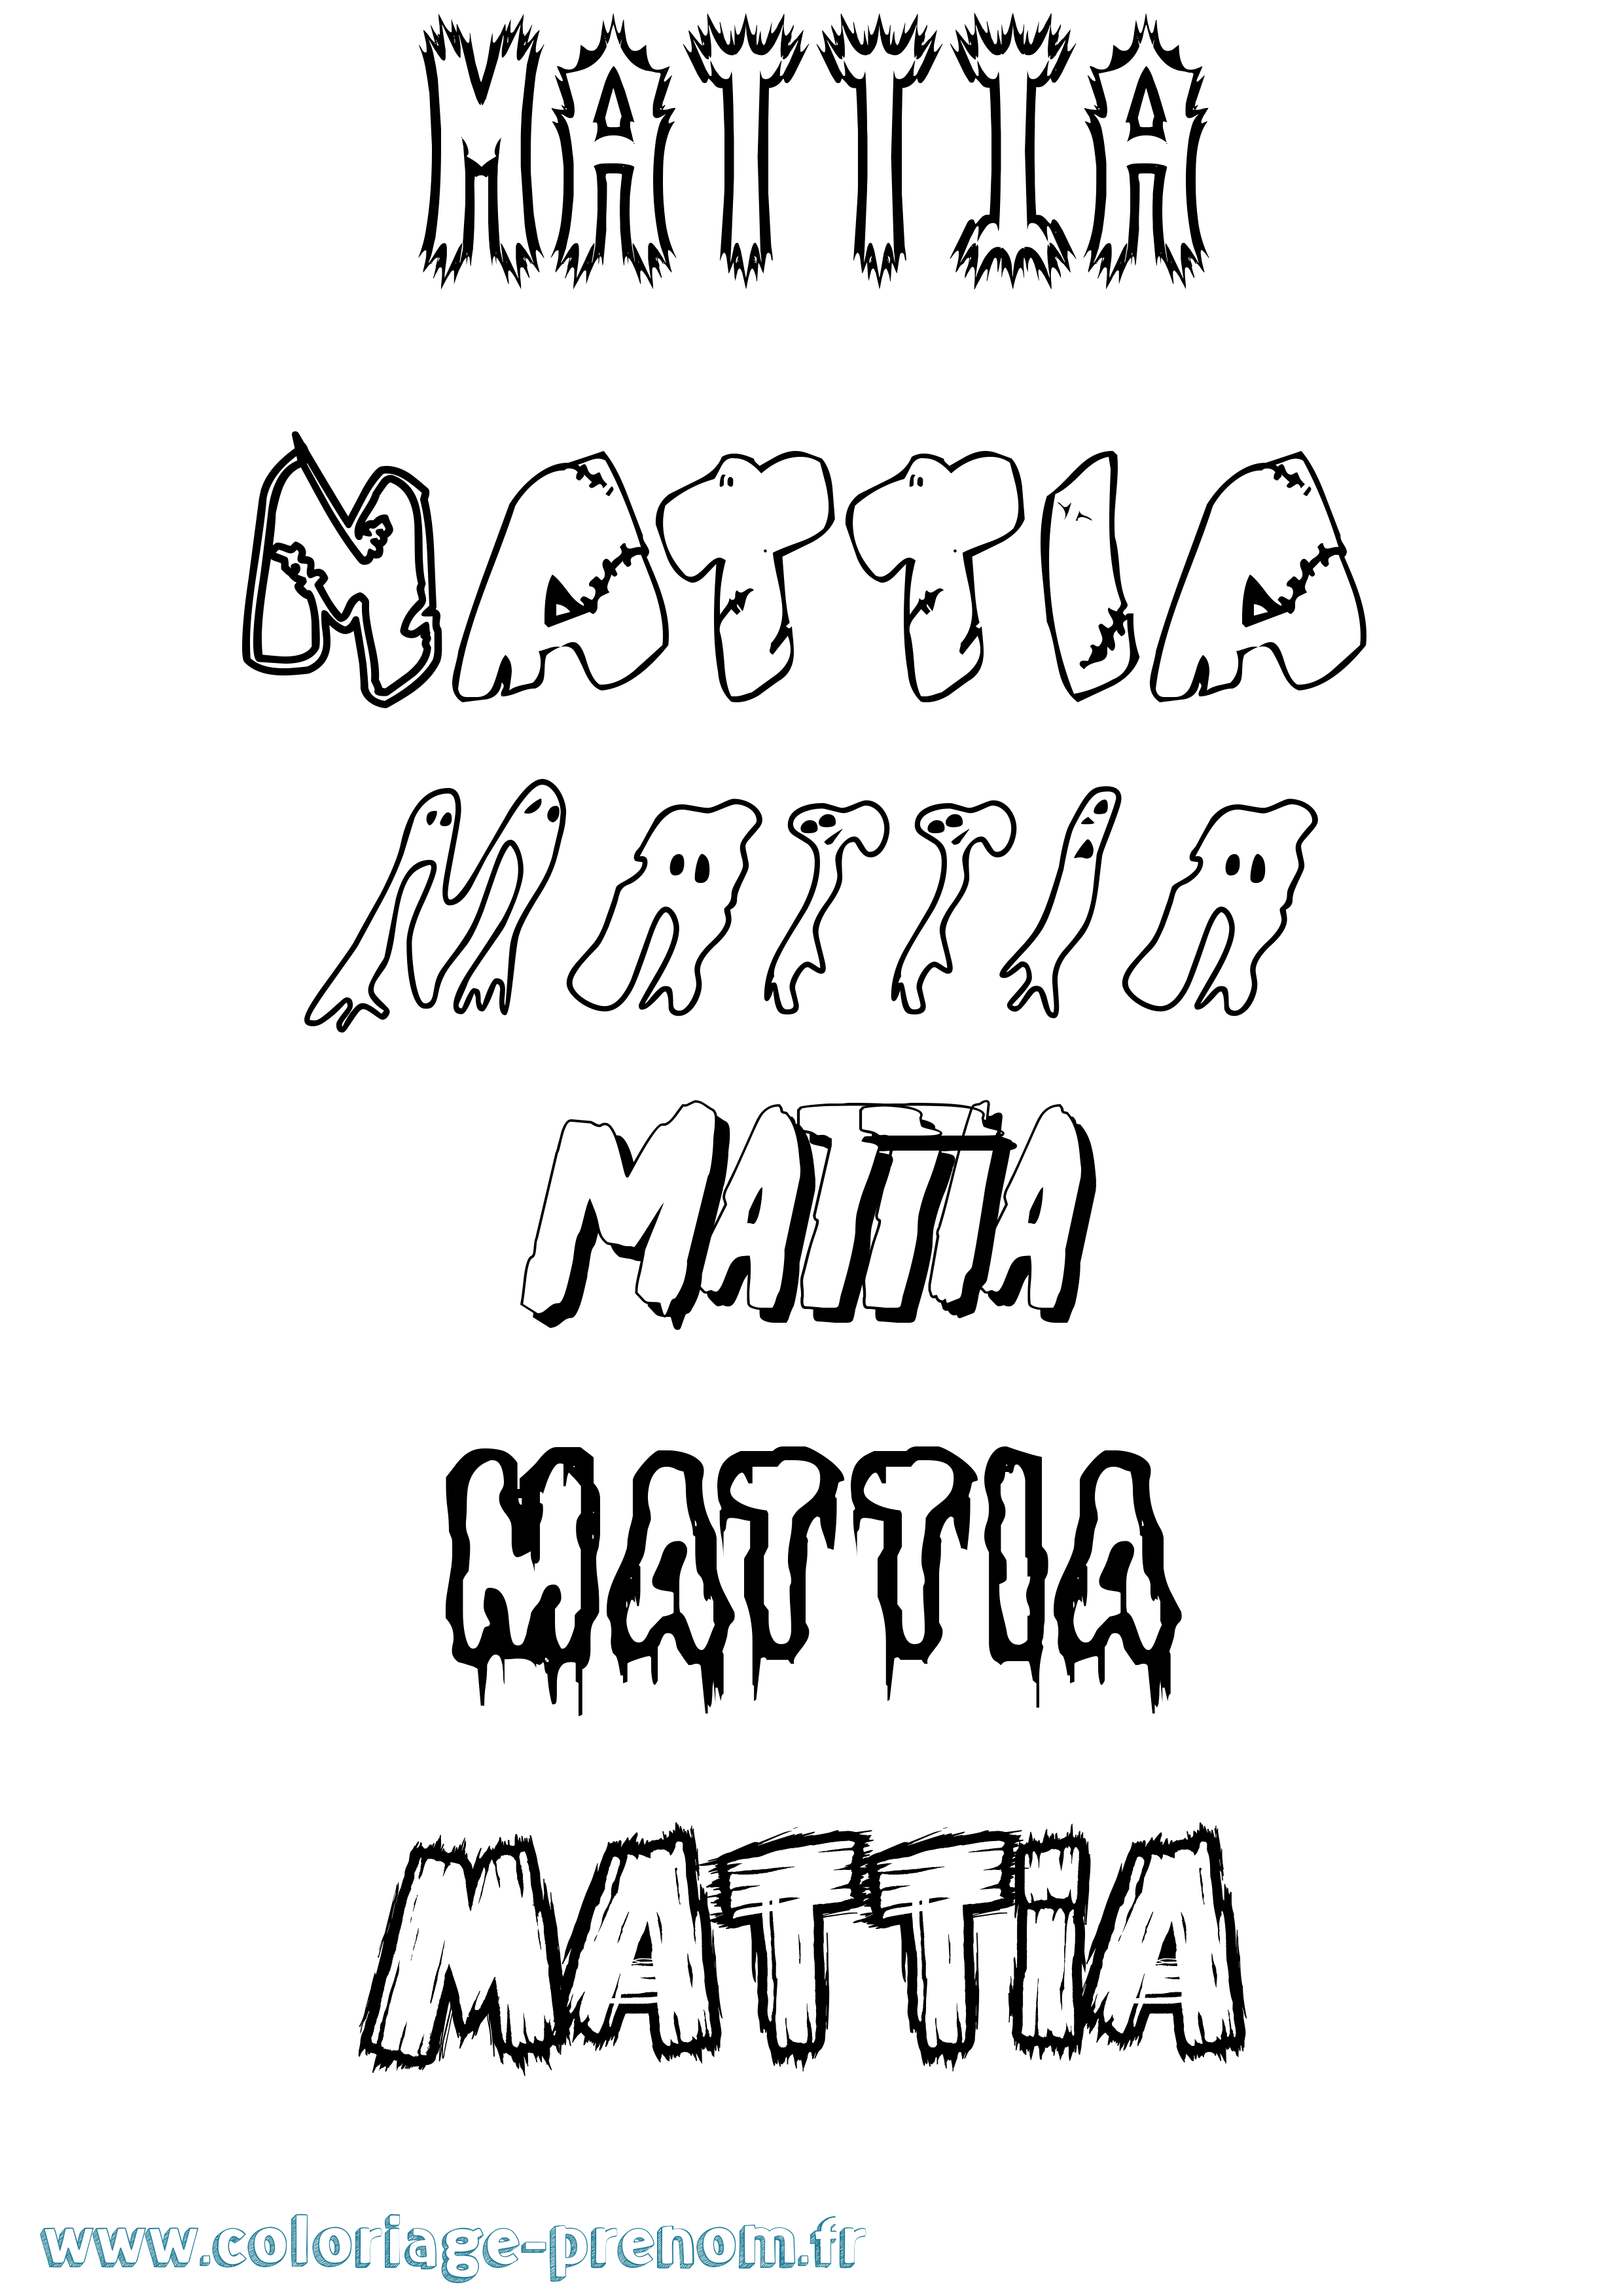 Coloriage prénom Mattia